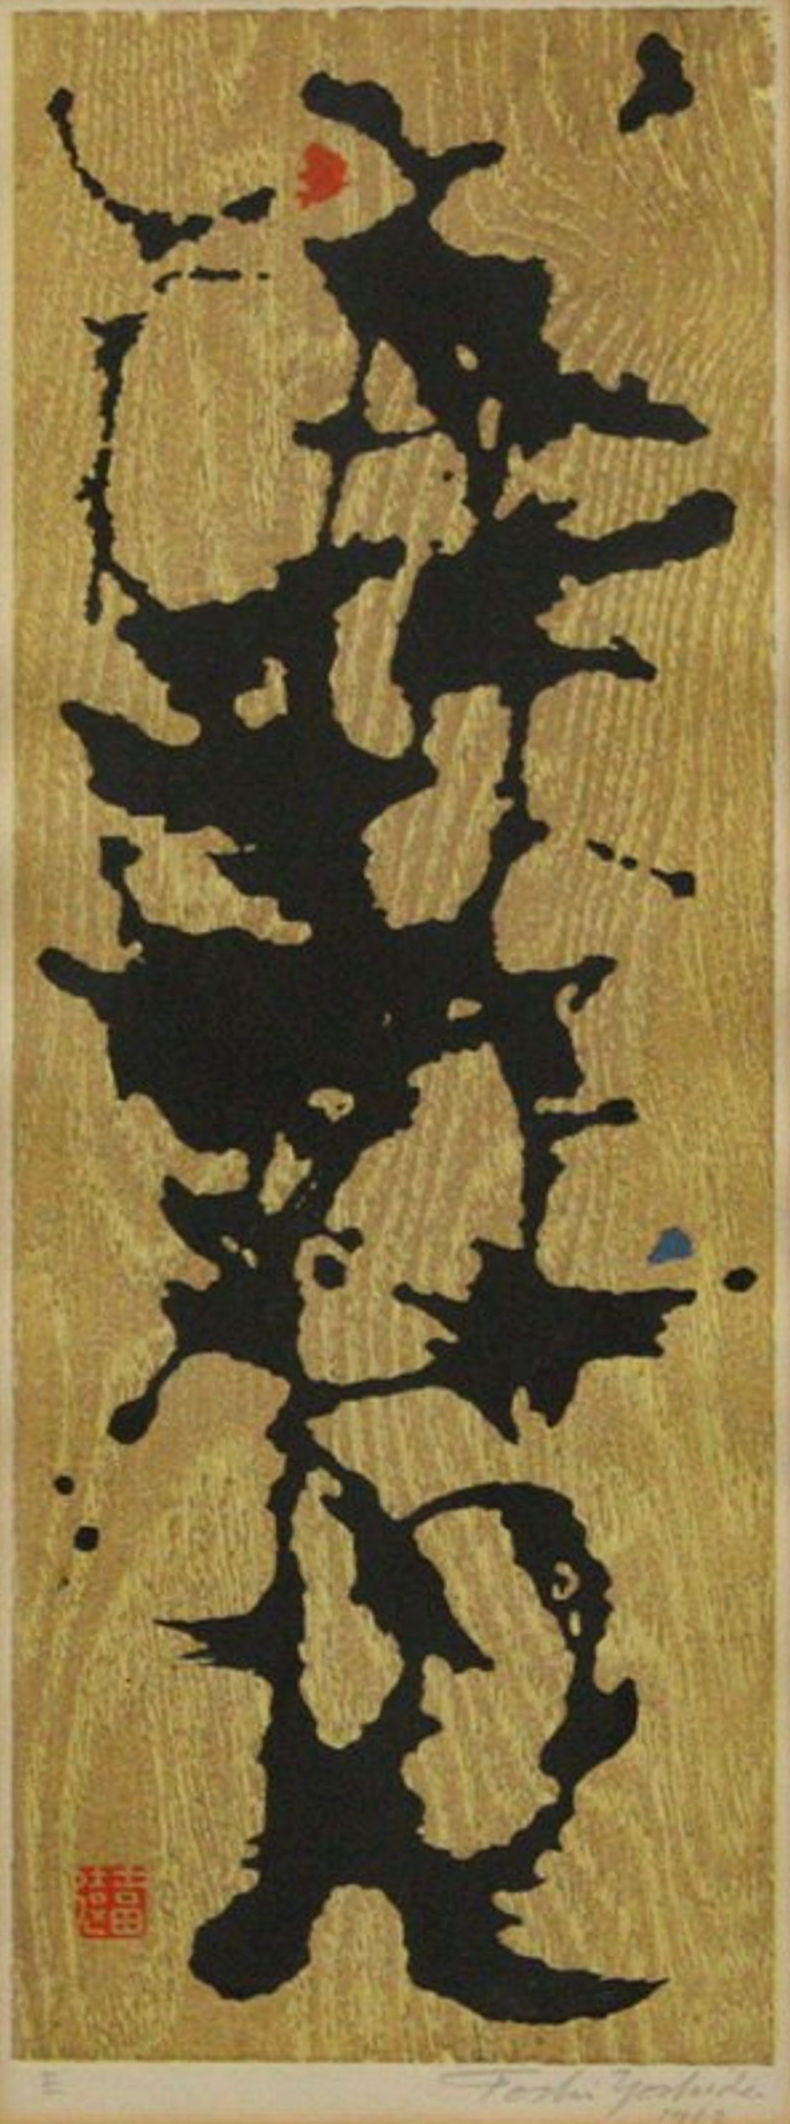 Toshi Yoshida “E” 1962 woodblock print